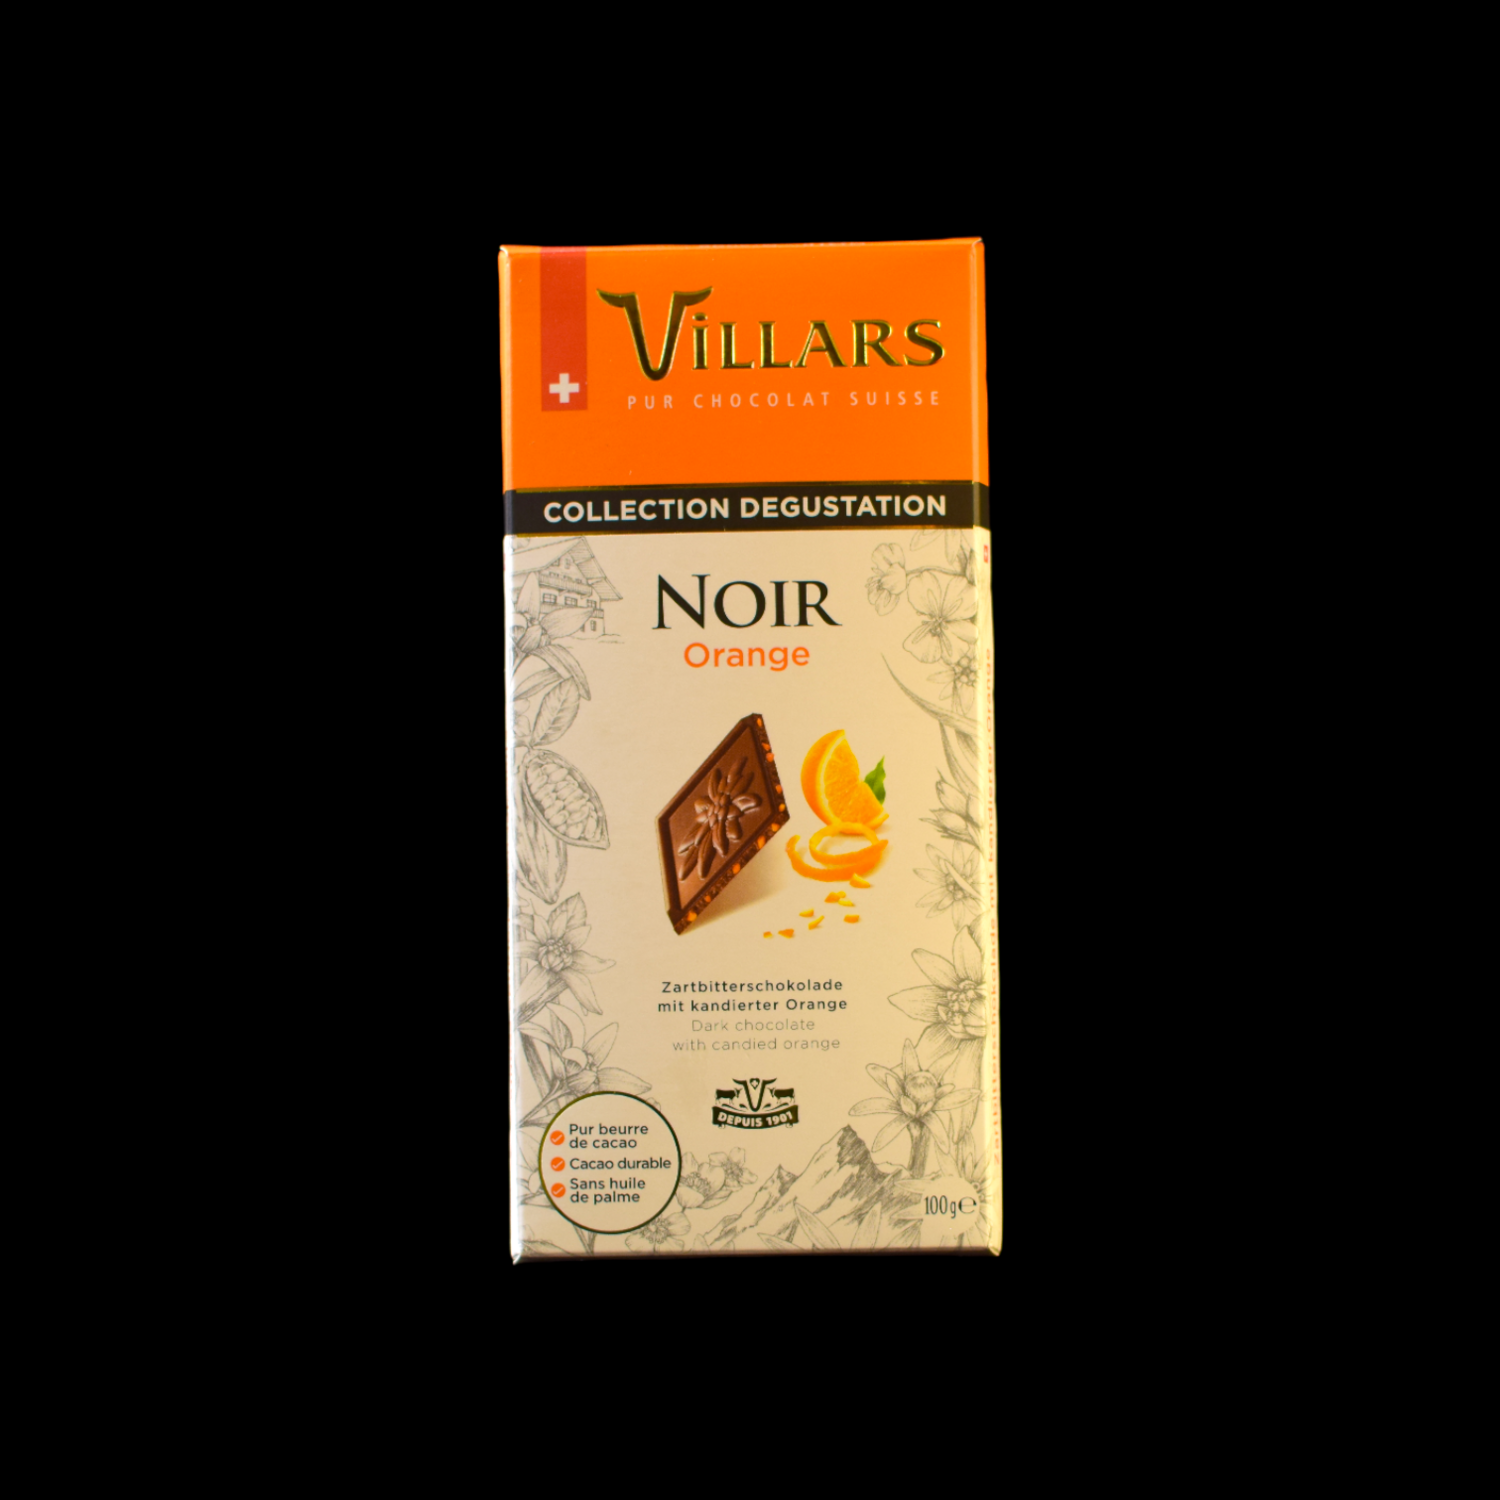 Villars Zartbitterschokolade mit kandierter Orange